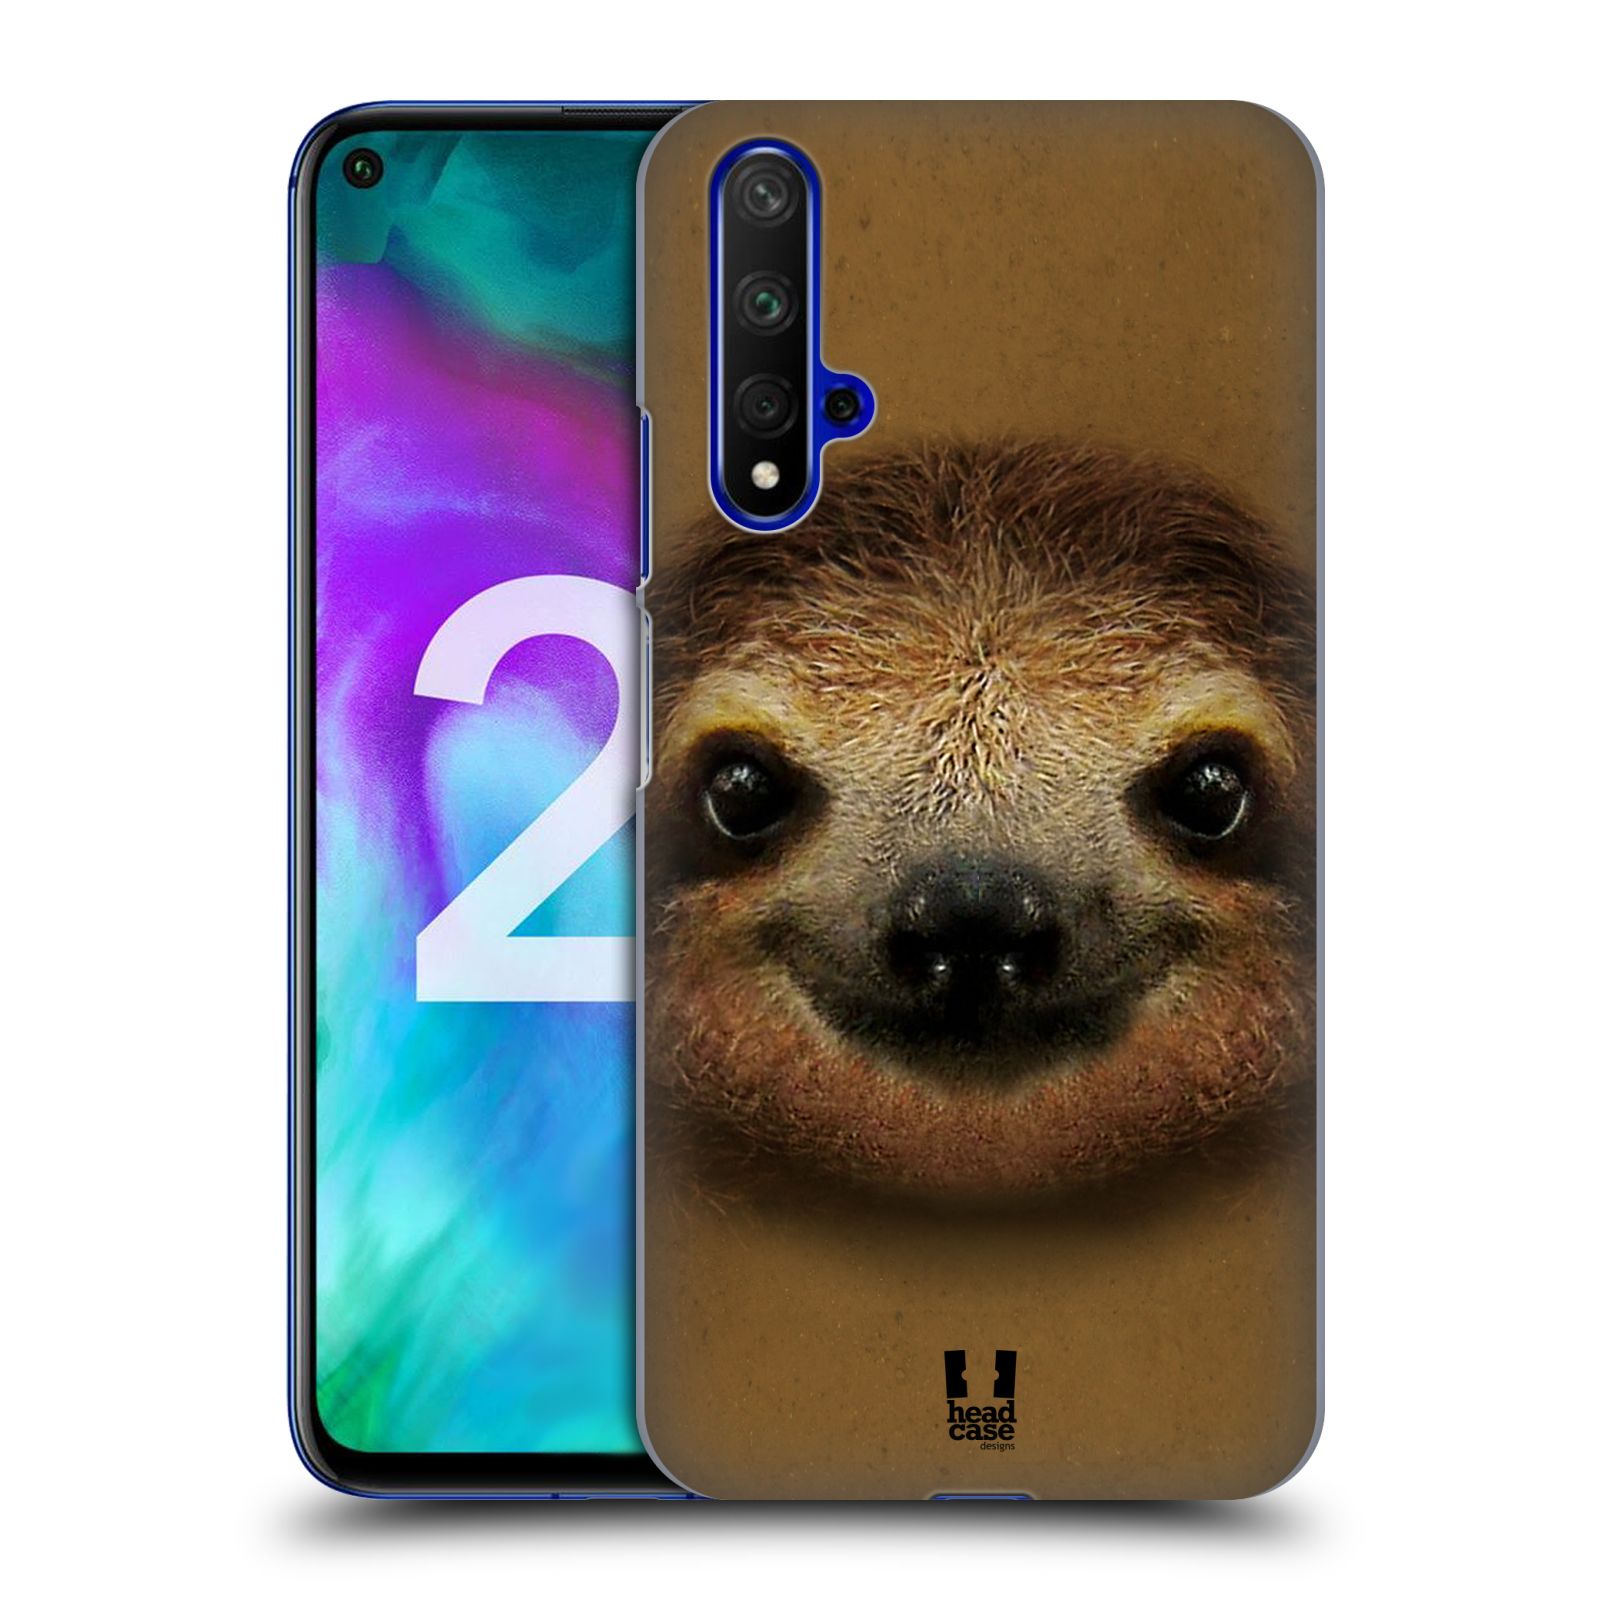 Pouzdro na mobil Honor 20 - HEAD CASE - vzor Zvířecí tváře 2 lenochod